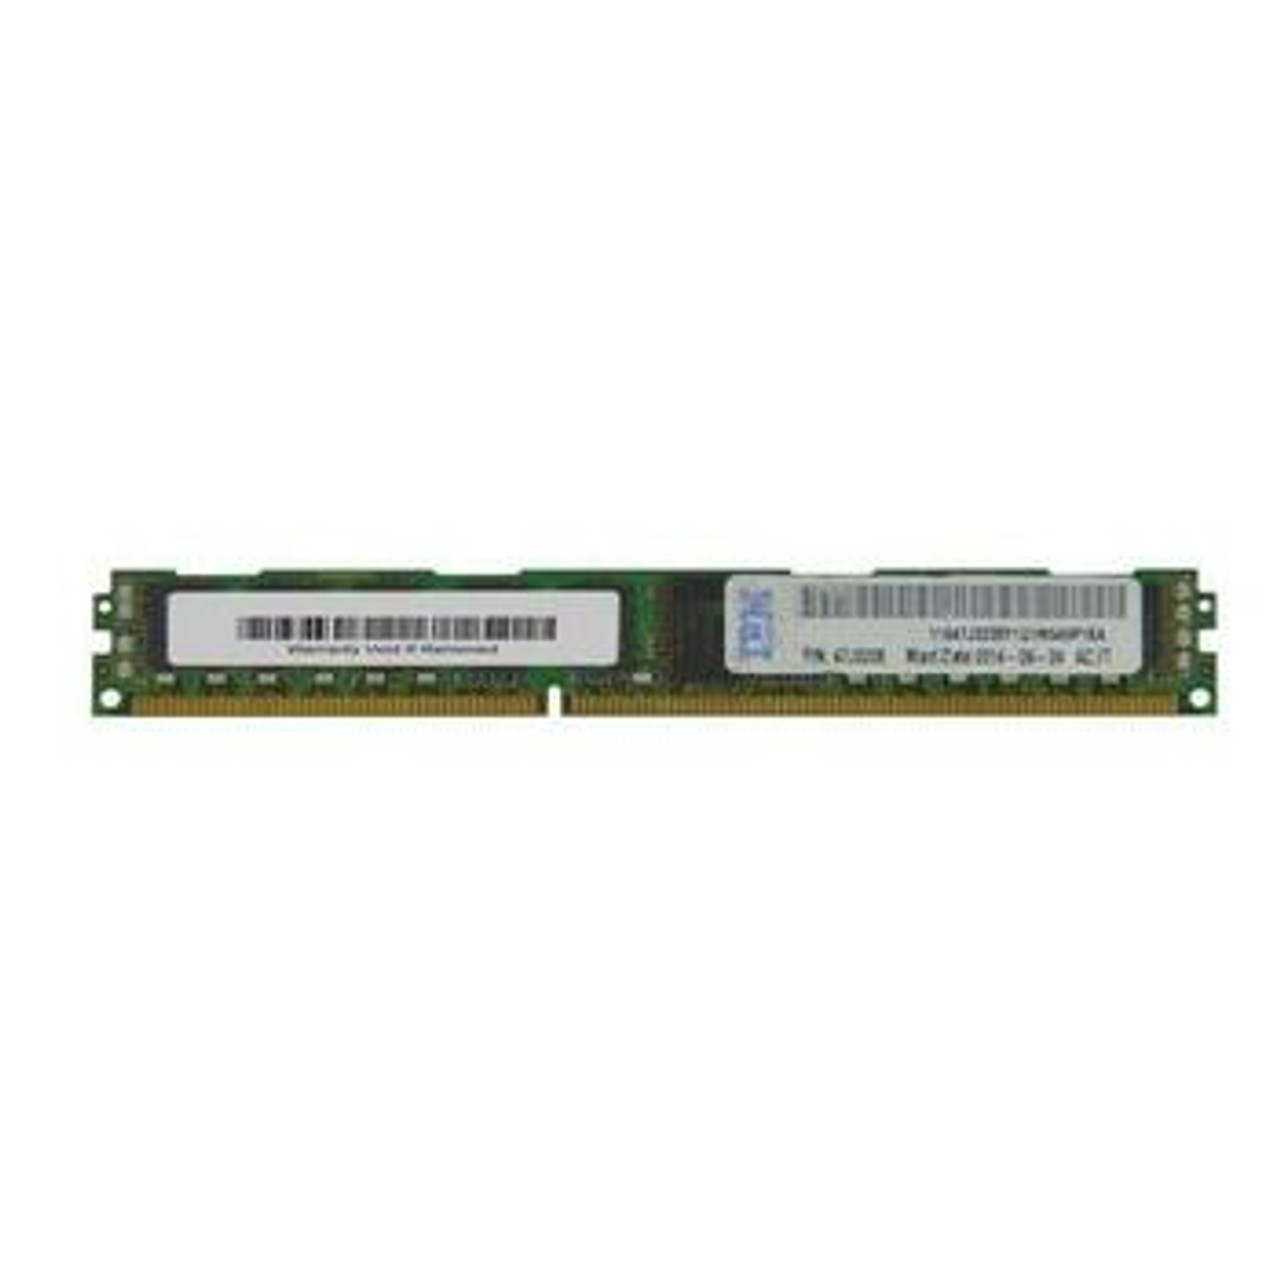 47J0235 IBM 8GB DDR3 Registered ECC PC3-12800 1600Mhz 2Rx8 Memory